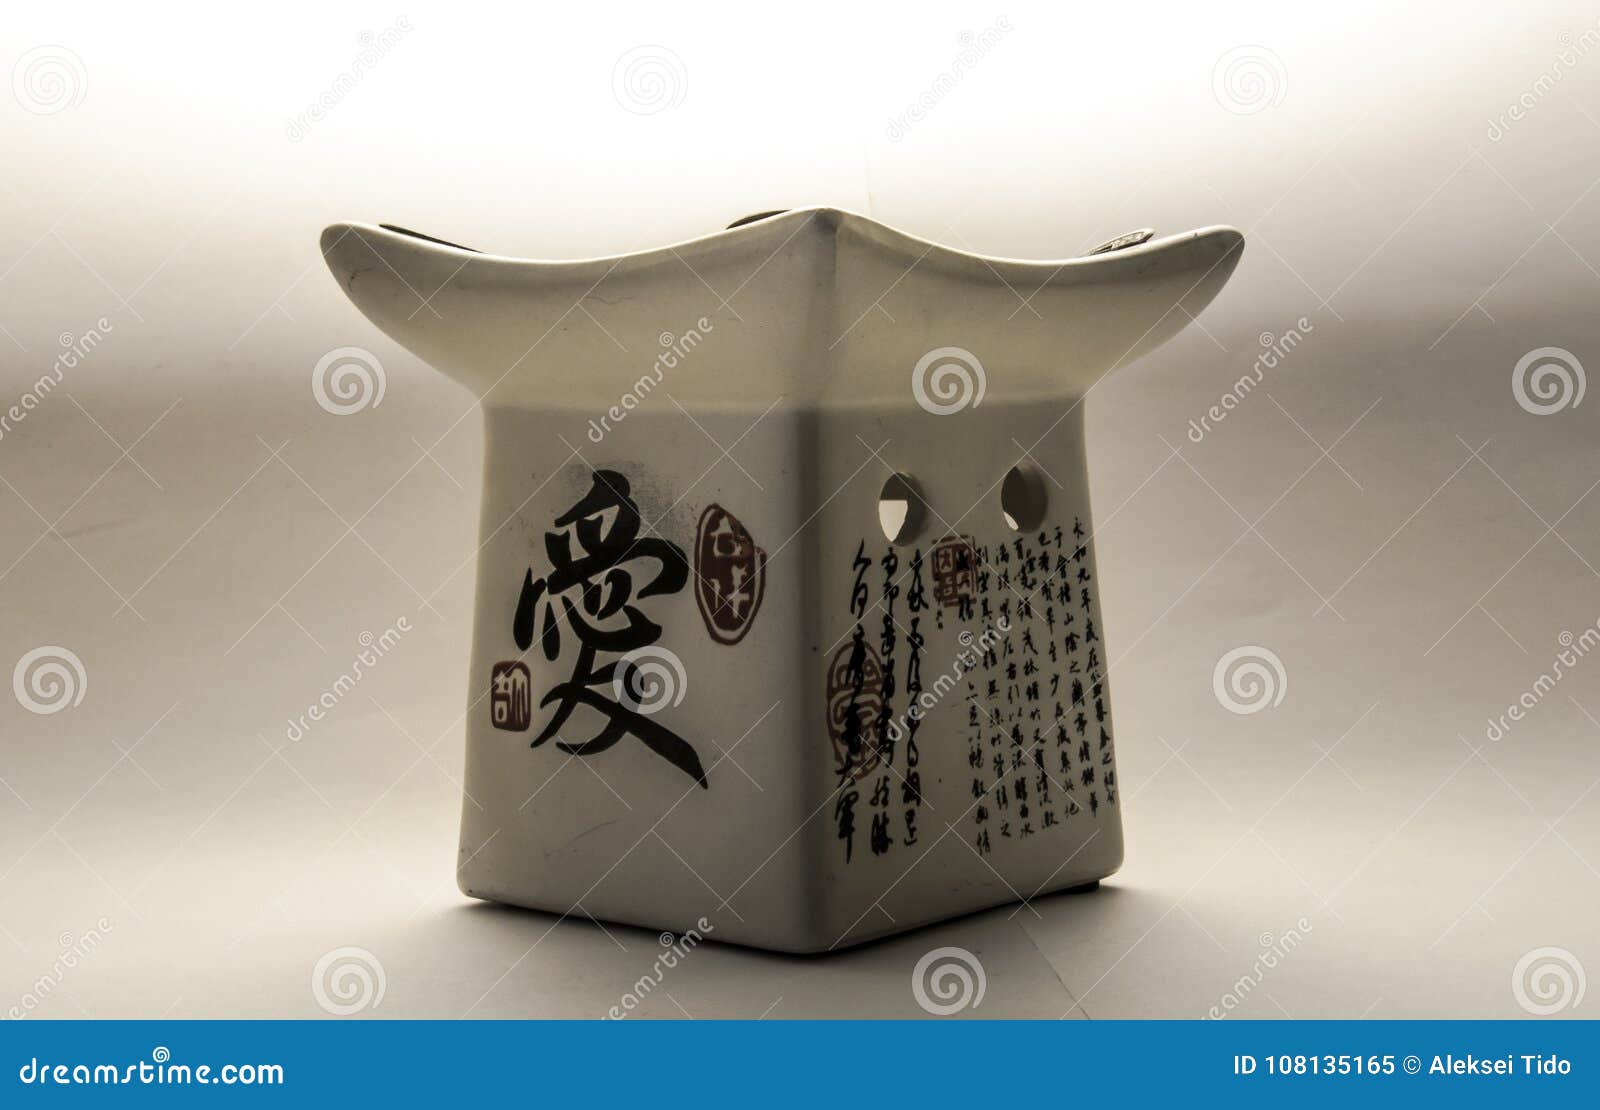 Японская ароматичная масляная лампа на белой предпосылке. Керамическая масляная лампа с японскими словами, белое cilor, белая предпосылка